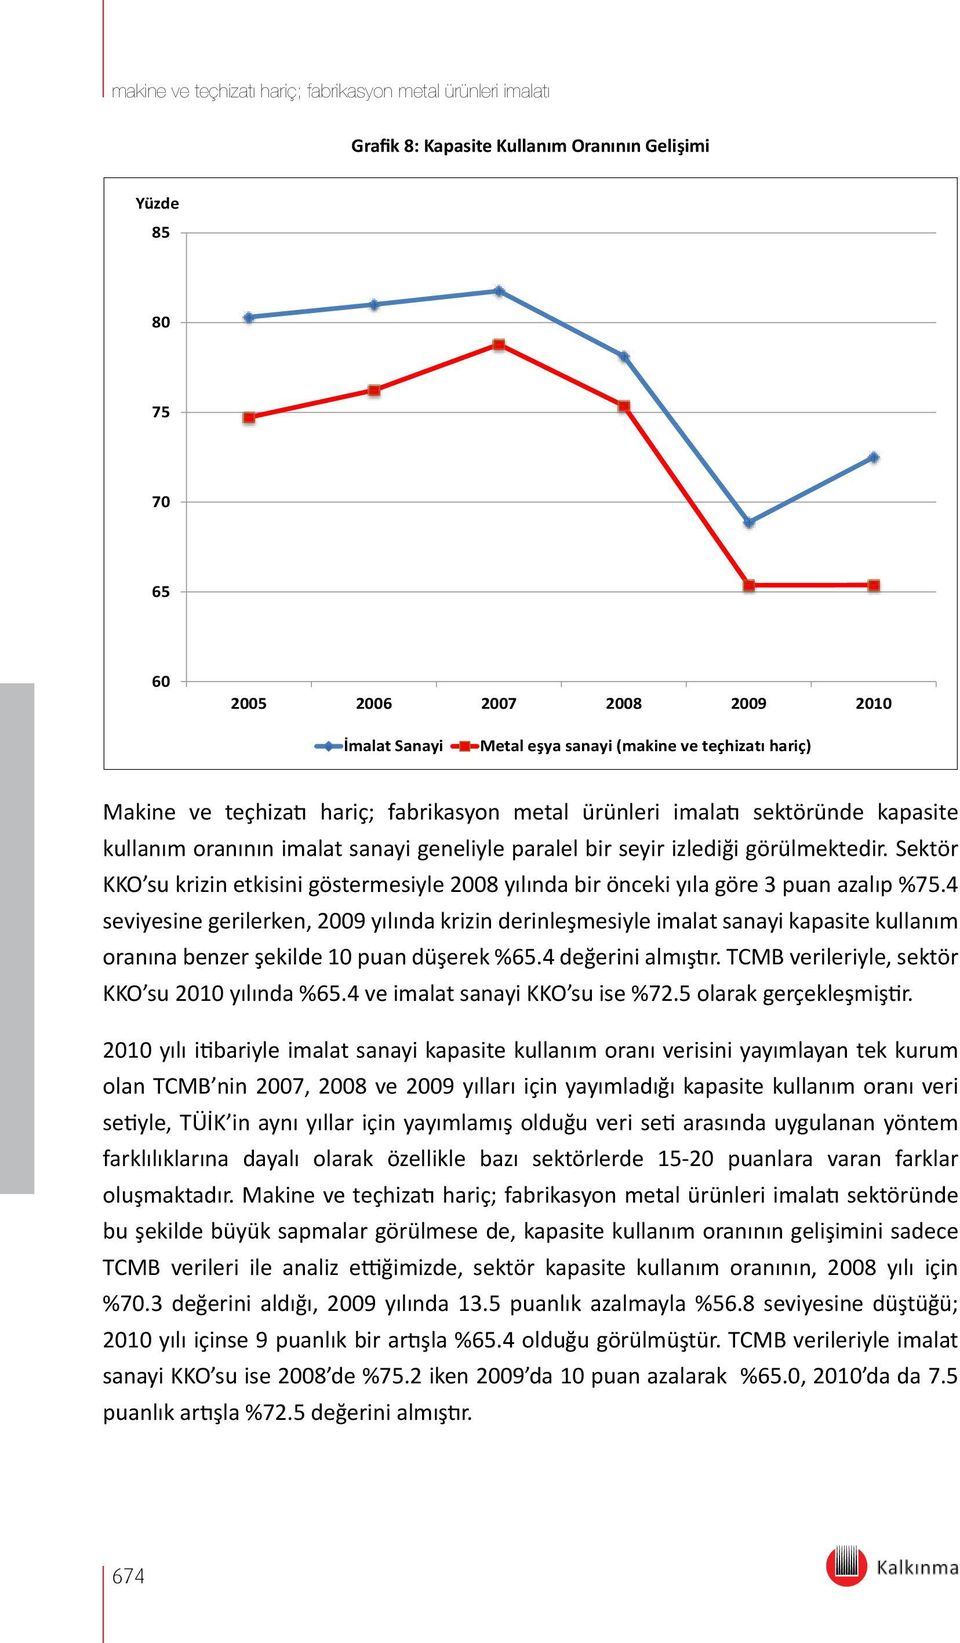 Sektör KKO su krizin etkisini göstermesiyle 2008 yılında bir önceki yıla göre 3 puan azalıp %75.